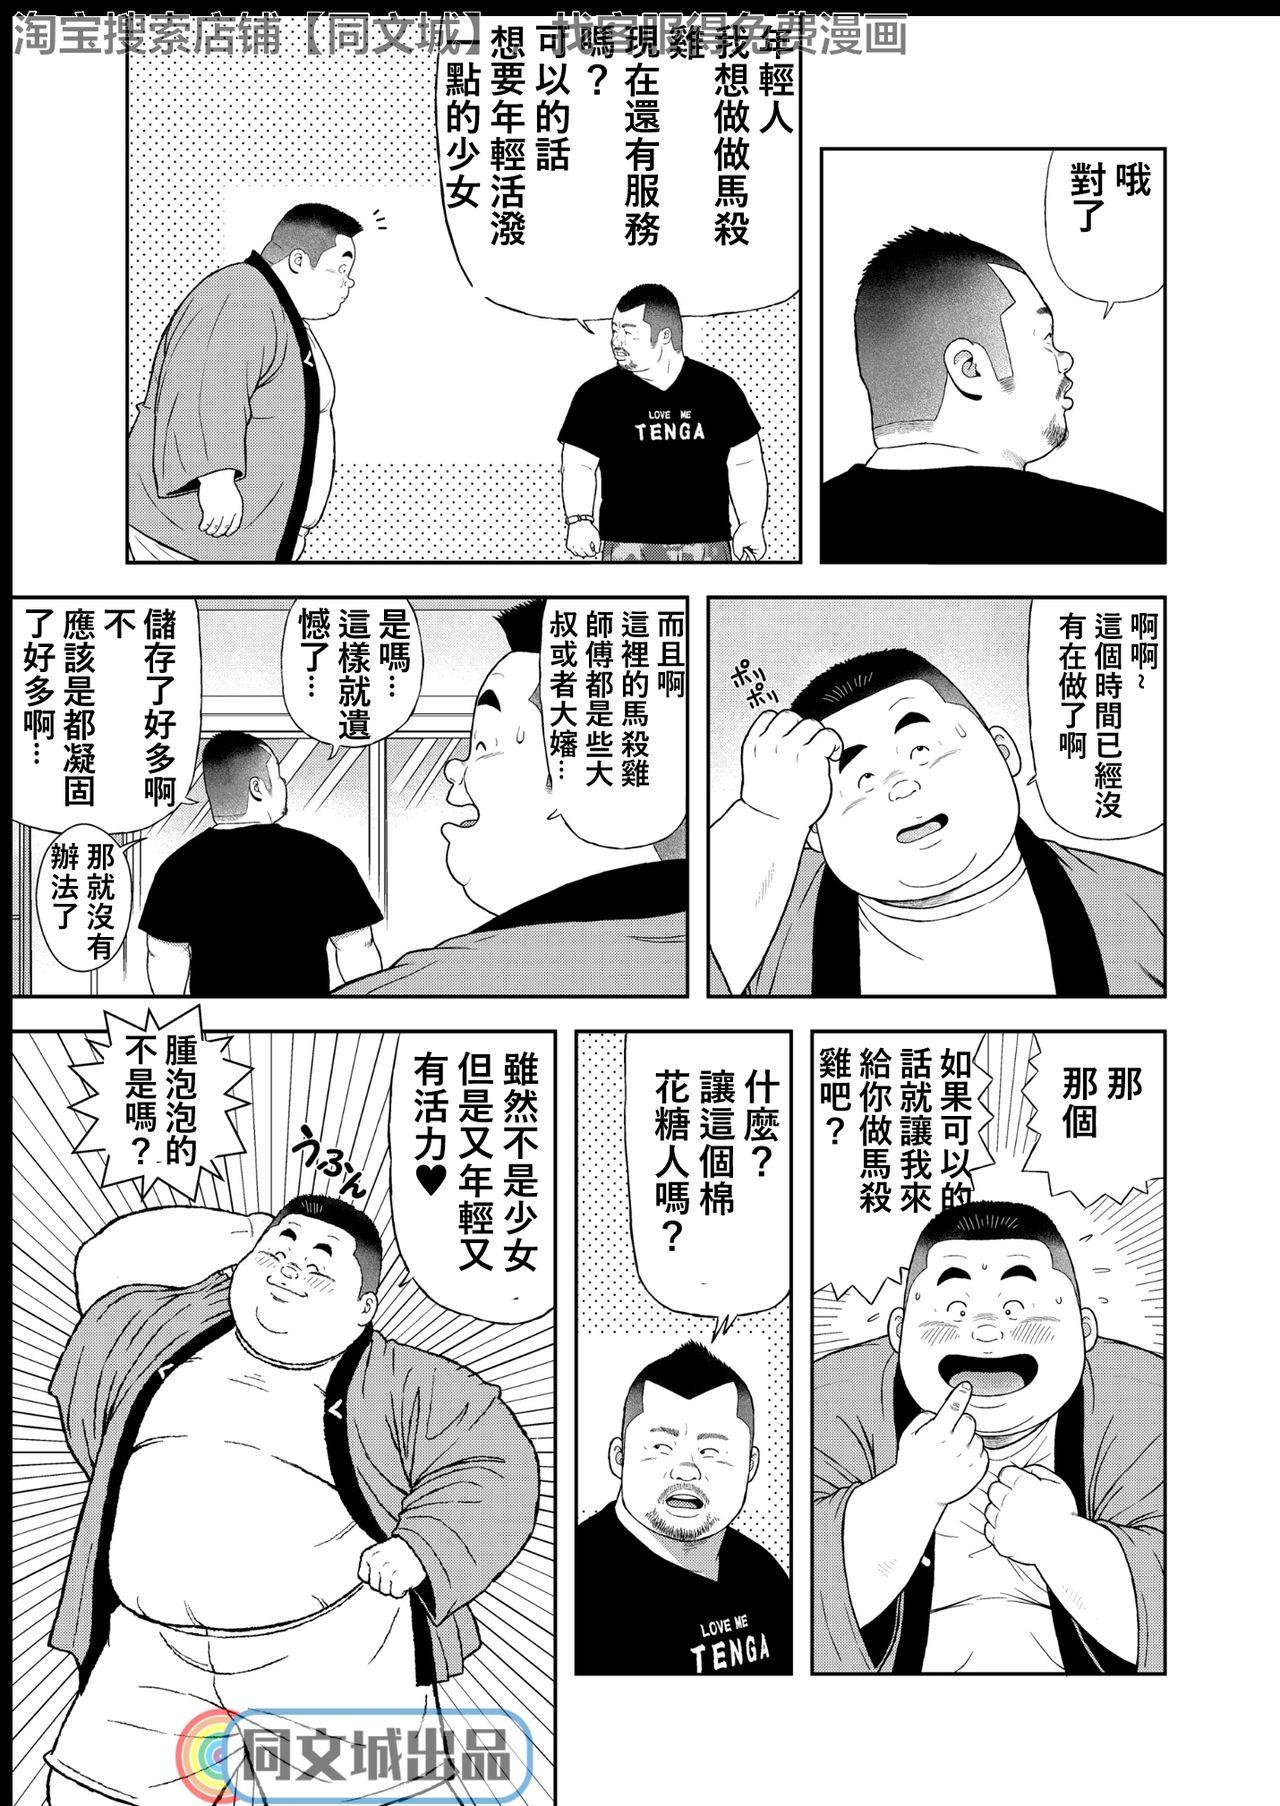 Prima Kunoyu Yonhatsume Geinin no Saga - Original Leggings - Page 5